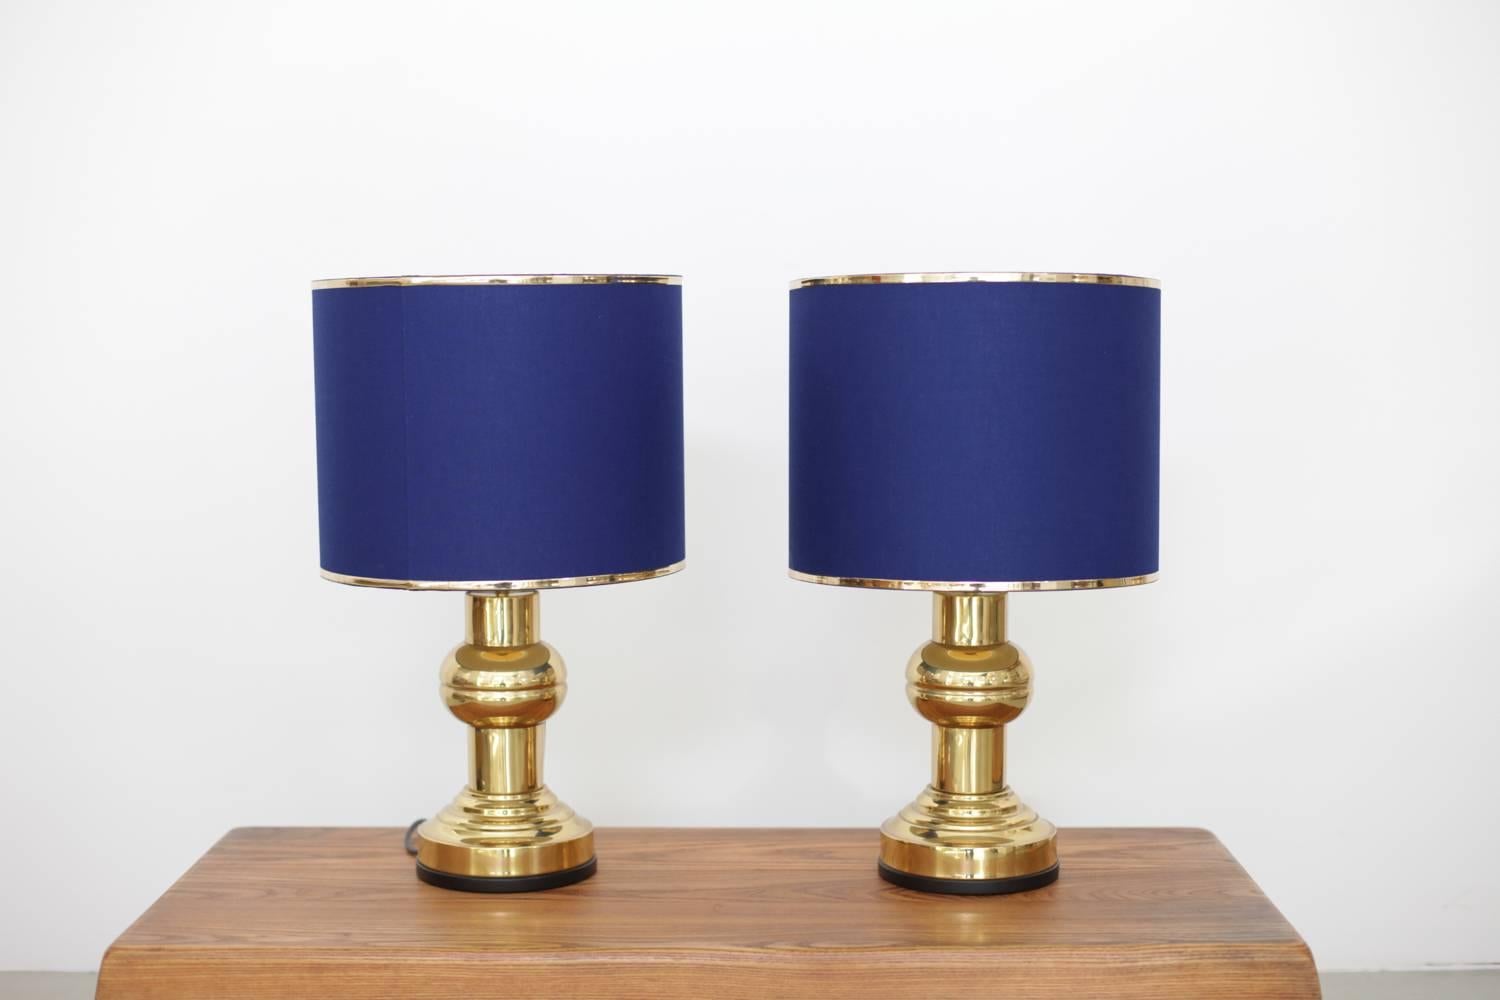 Un ensemble étonnant de deux lampes de table massives de style Art Déco avec des abat-jour bleu foncé en excellent état. 
Pour plus de sécurité, la lampe doit être contrôlée sur place par un spécialiste en fonction des exigences locales.

2 x E 27.
